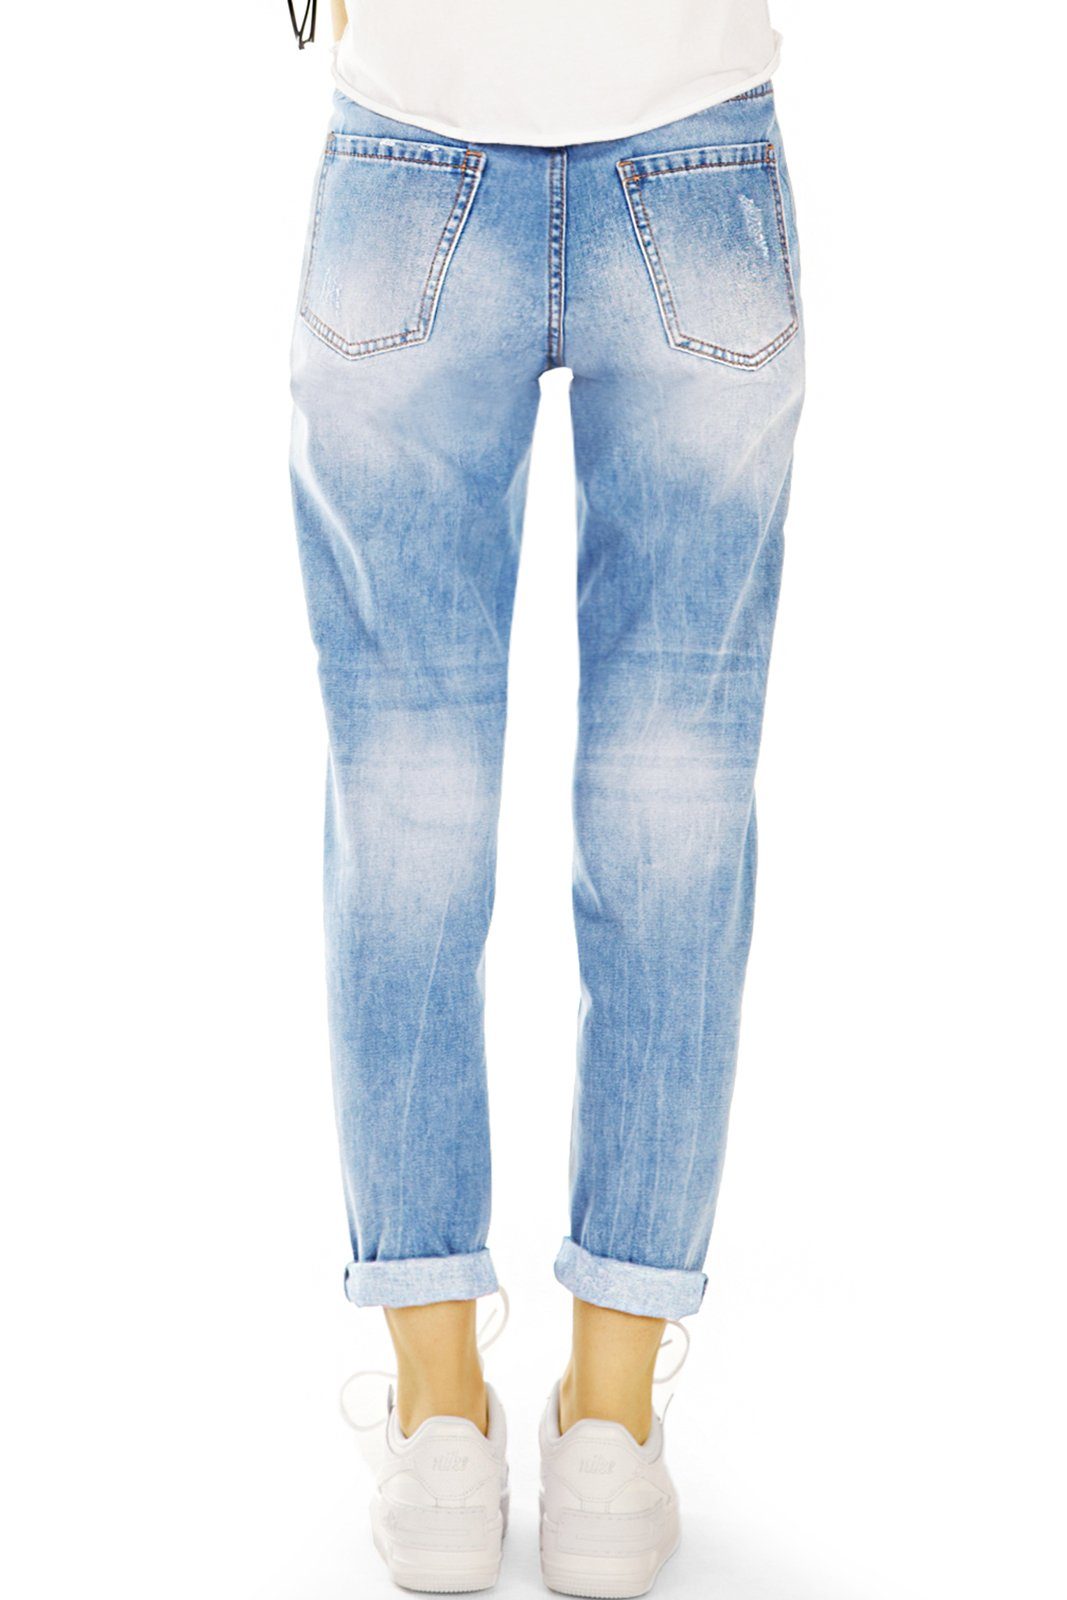 Damen Destroyed - Waist Mom-Jeans styled High be - 5-Pocket-Style Bequem Jeans Locker - j6e Mom Hose